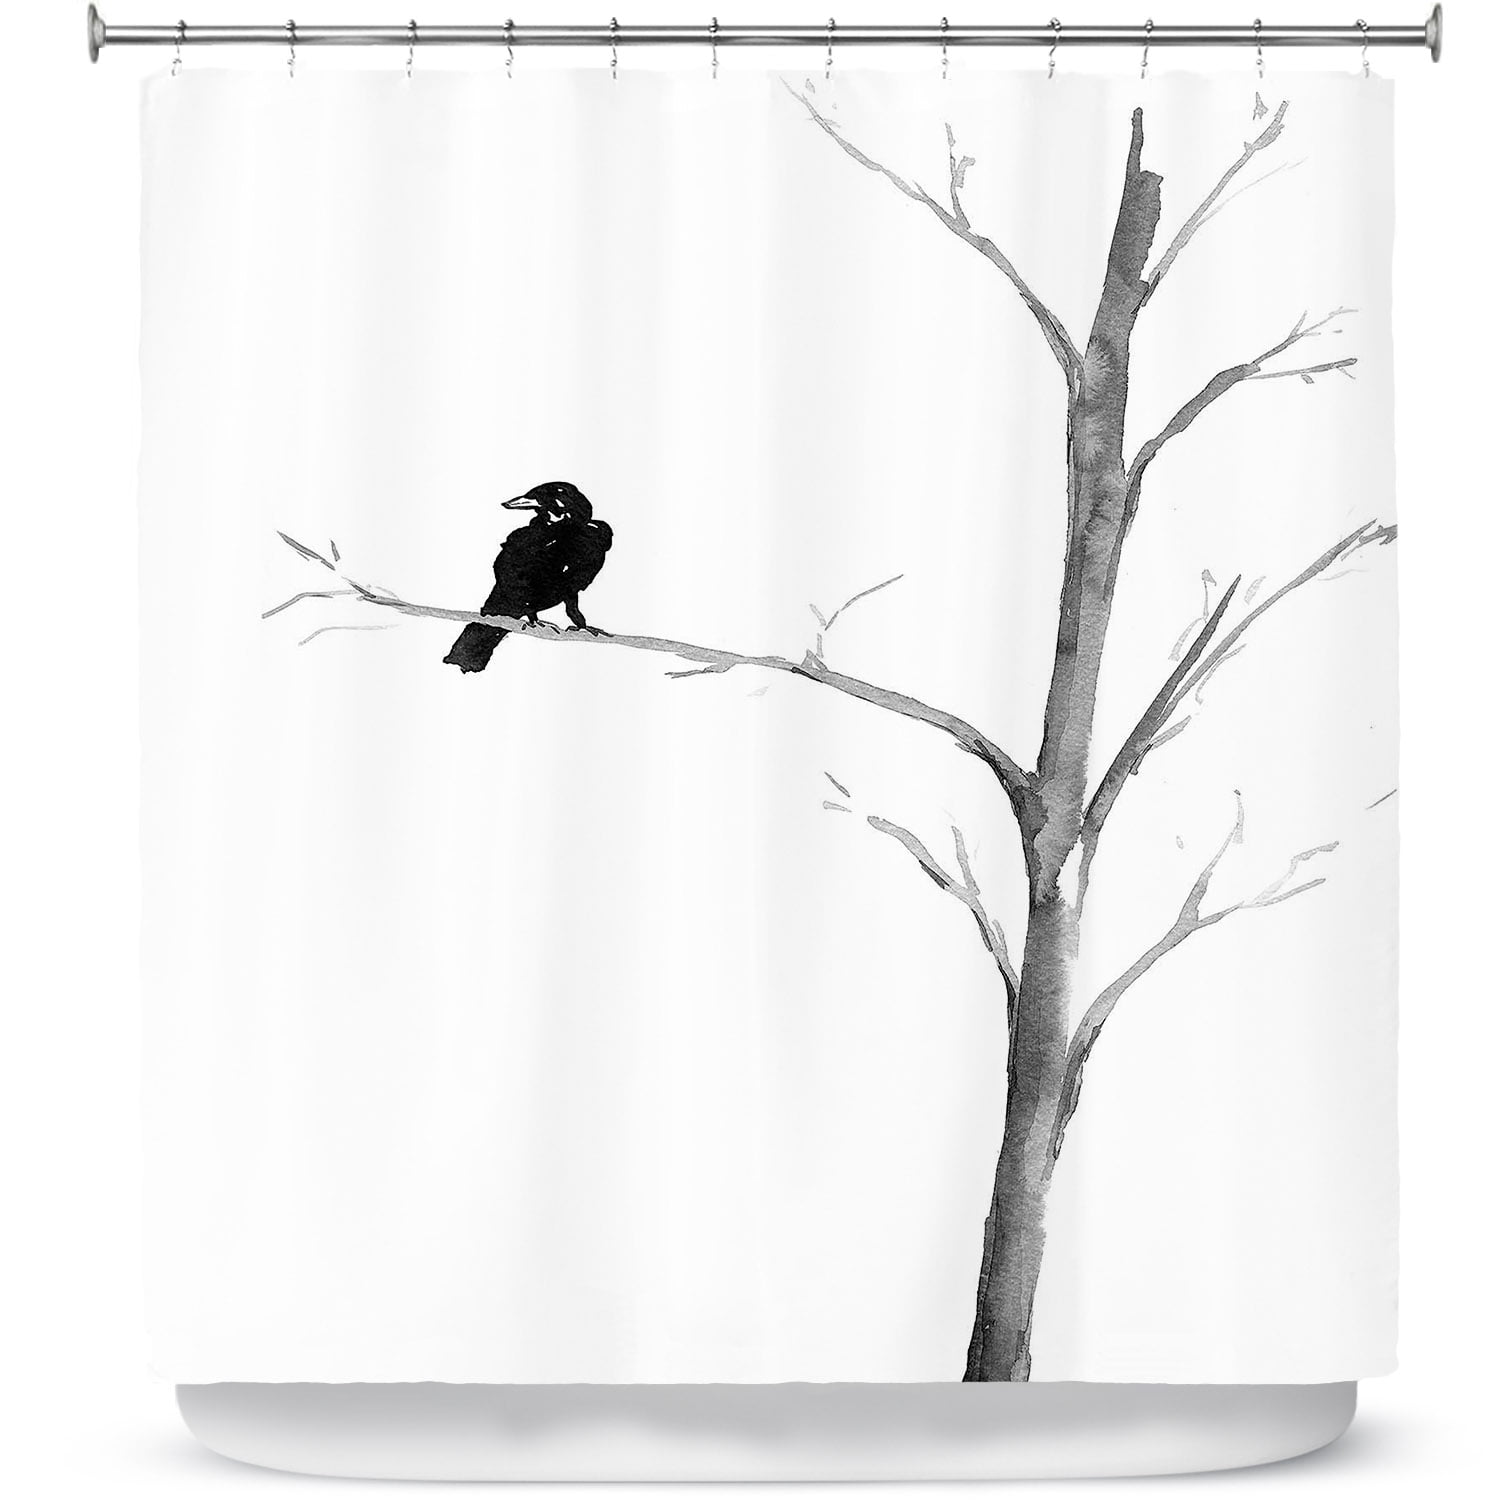 Shower Curtains 70 x 73 from DiaNoche Designs by Brazen Design Studio -  Raven Bird Tree 